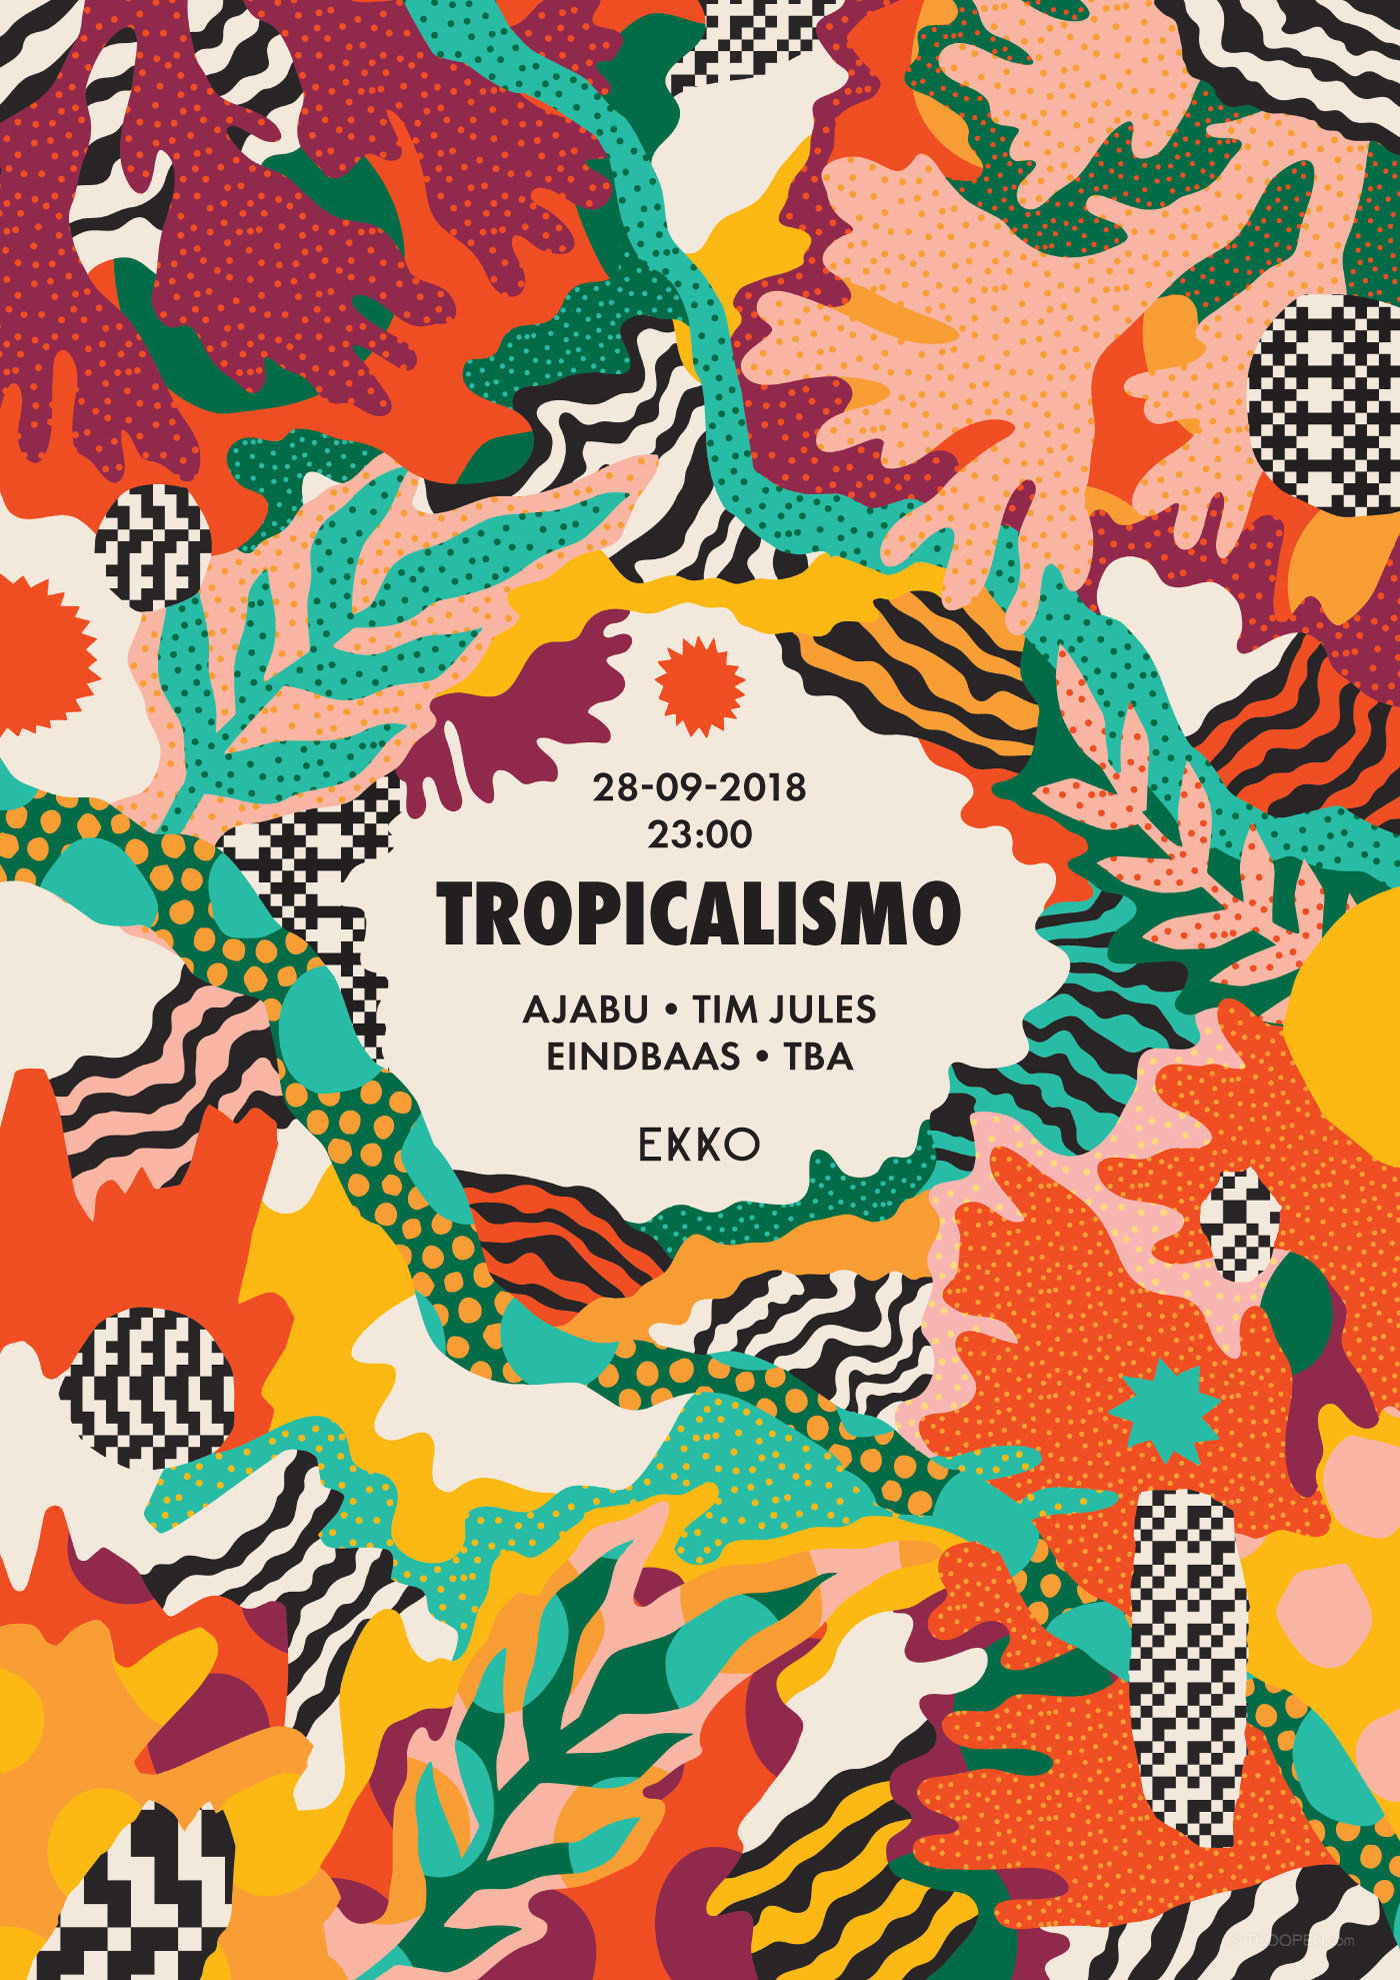 炫酷热带植物tropicalismo舞曲海报设计欣赏-04